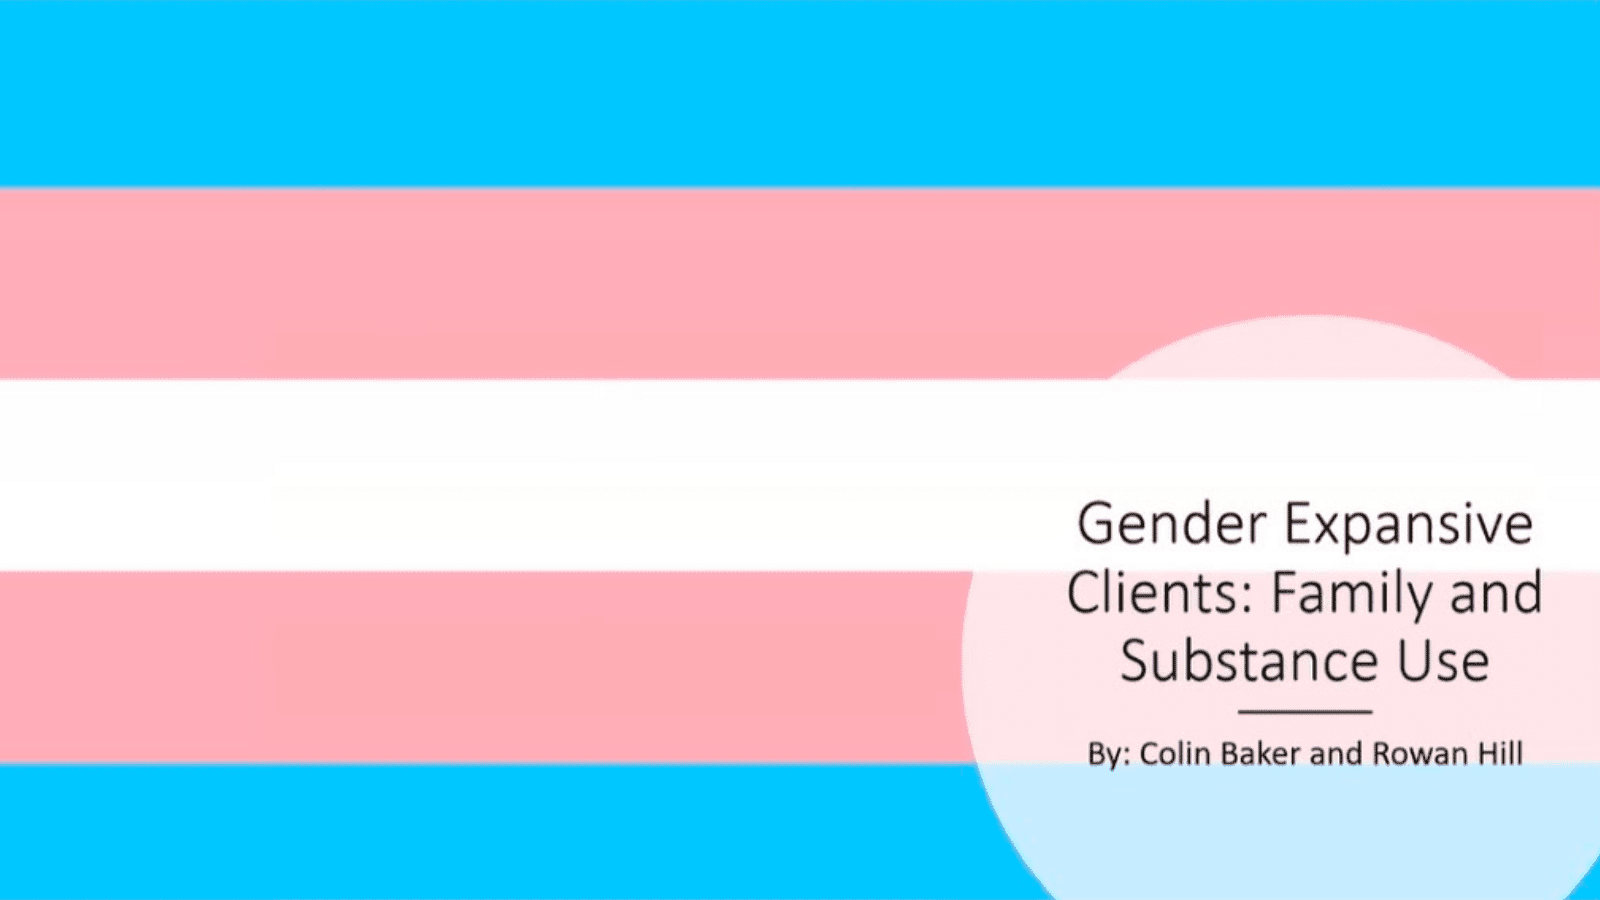 Gender Expansive Clients presentation slide